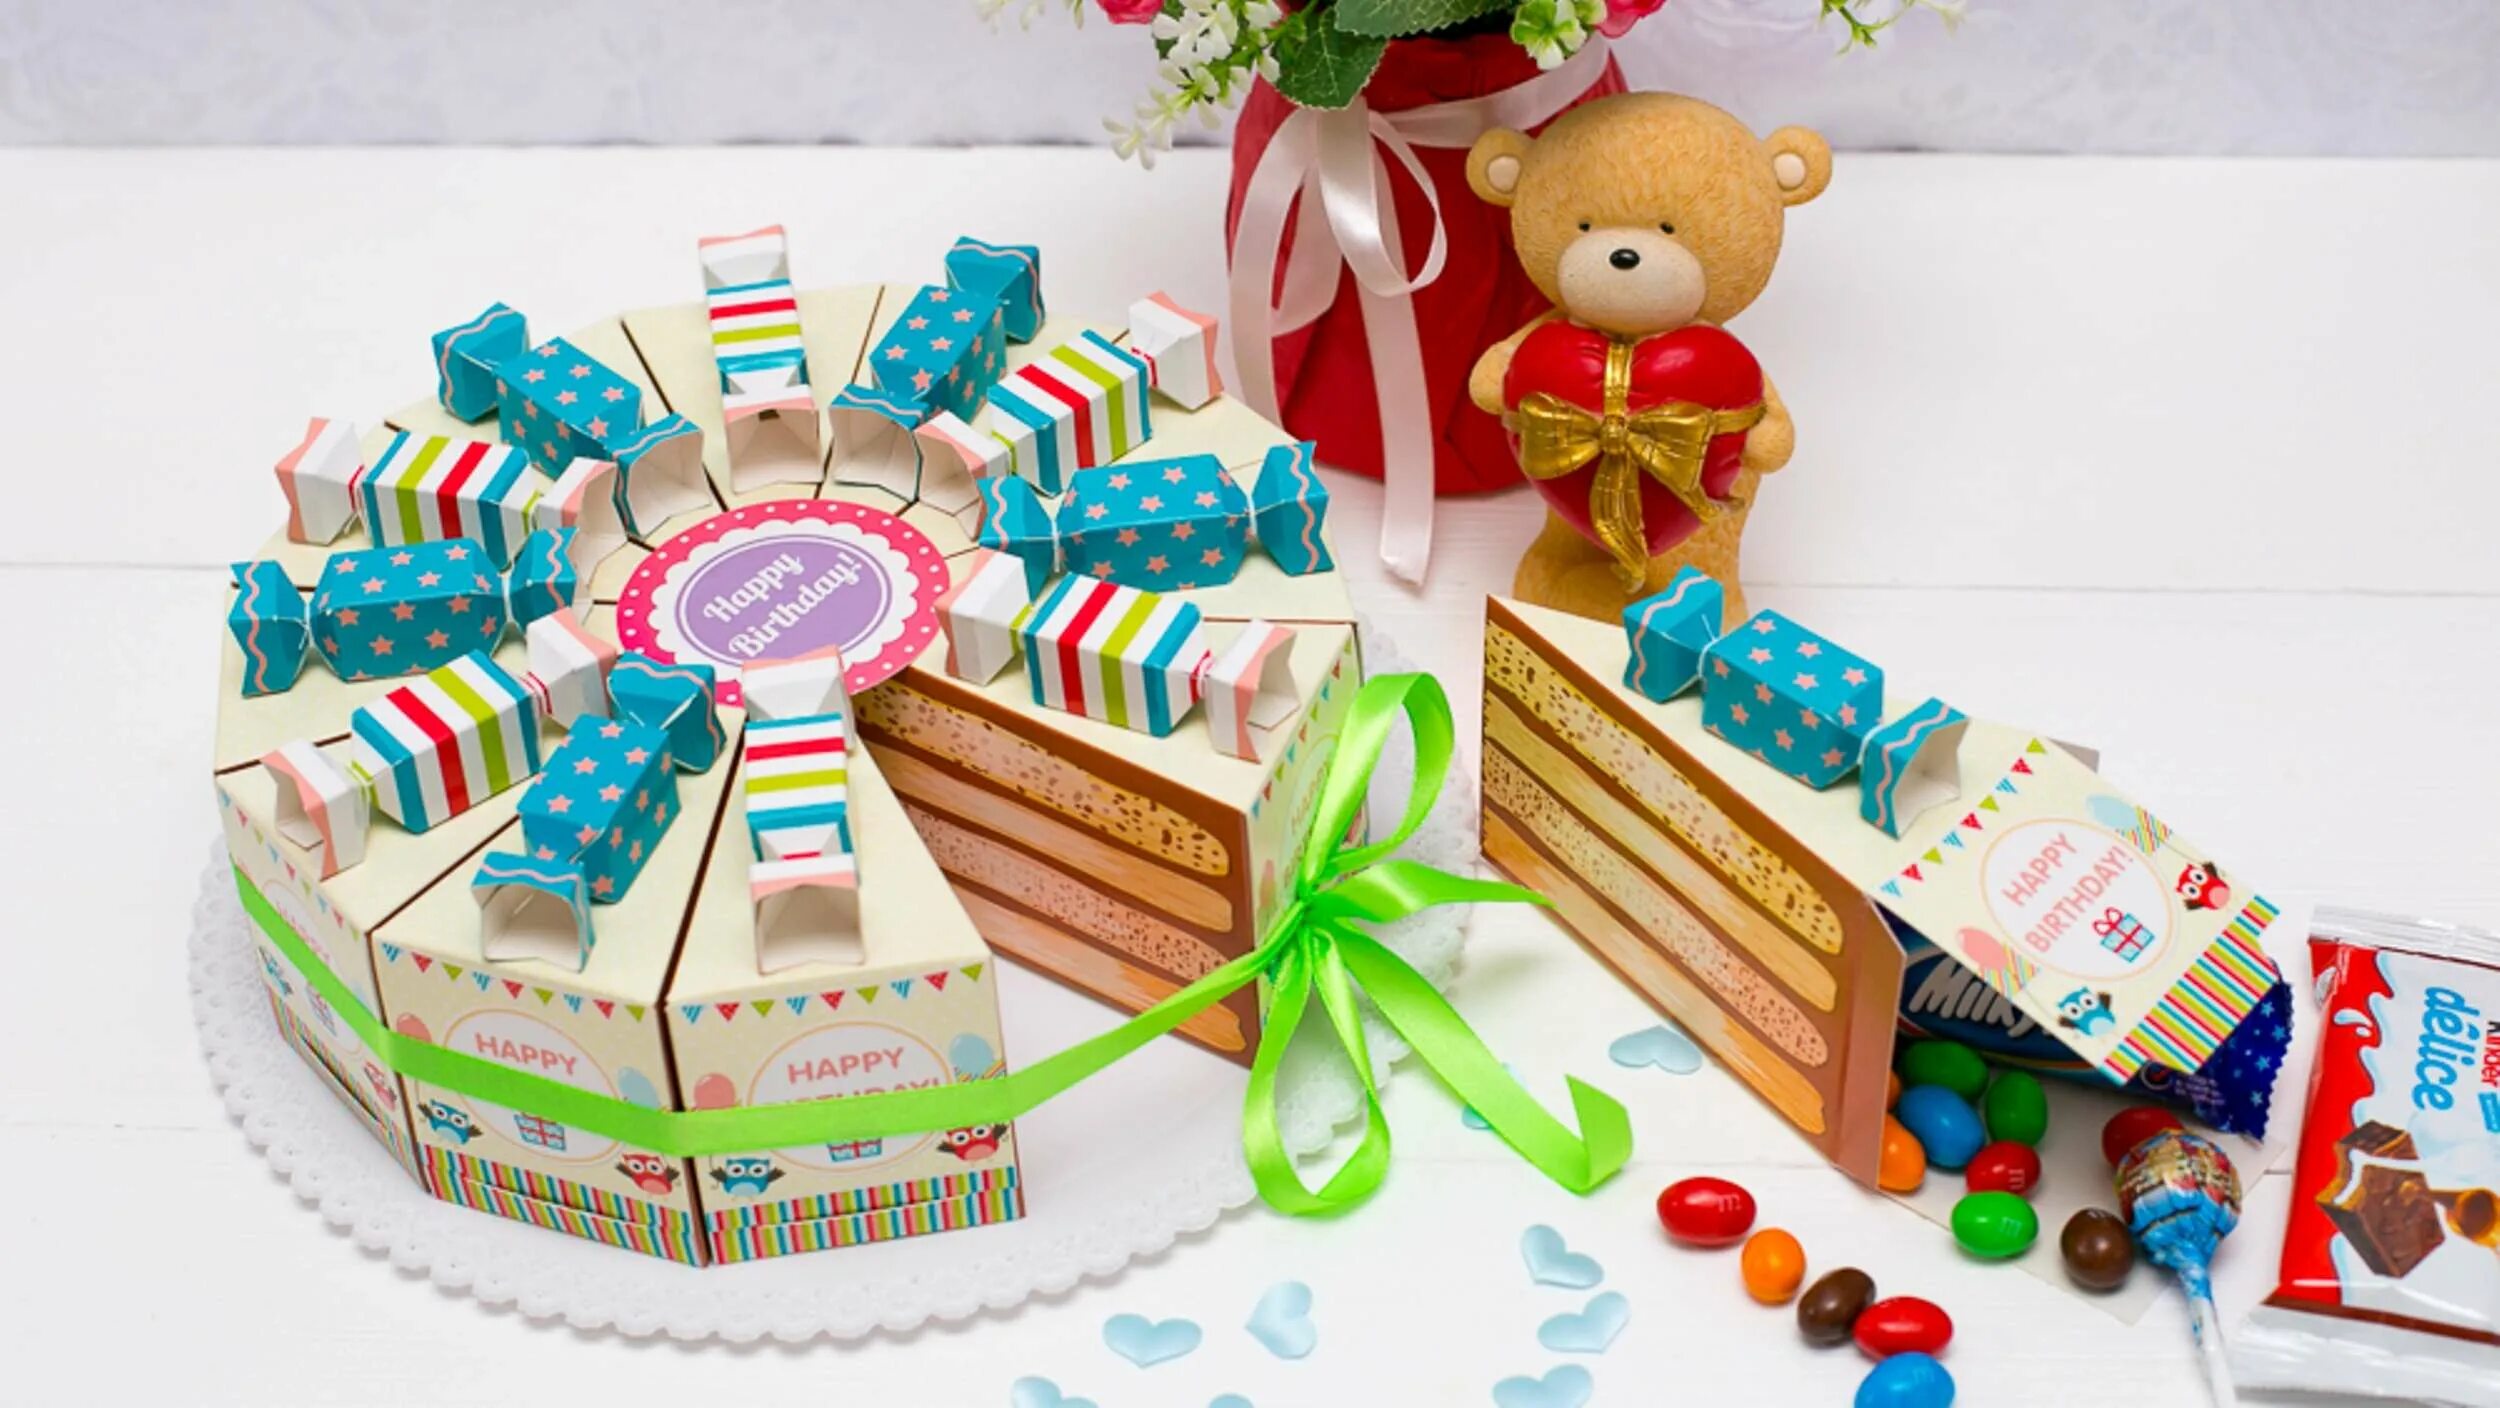 Подарок на день рождение из картона. Торт подарок. Картонный торт. Торт бумажный с подарками. Пожелания в тортик из картона.